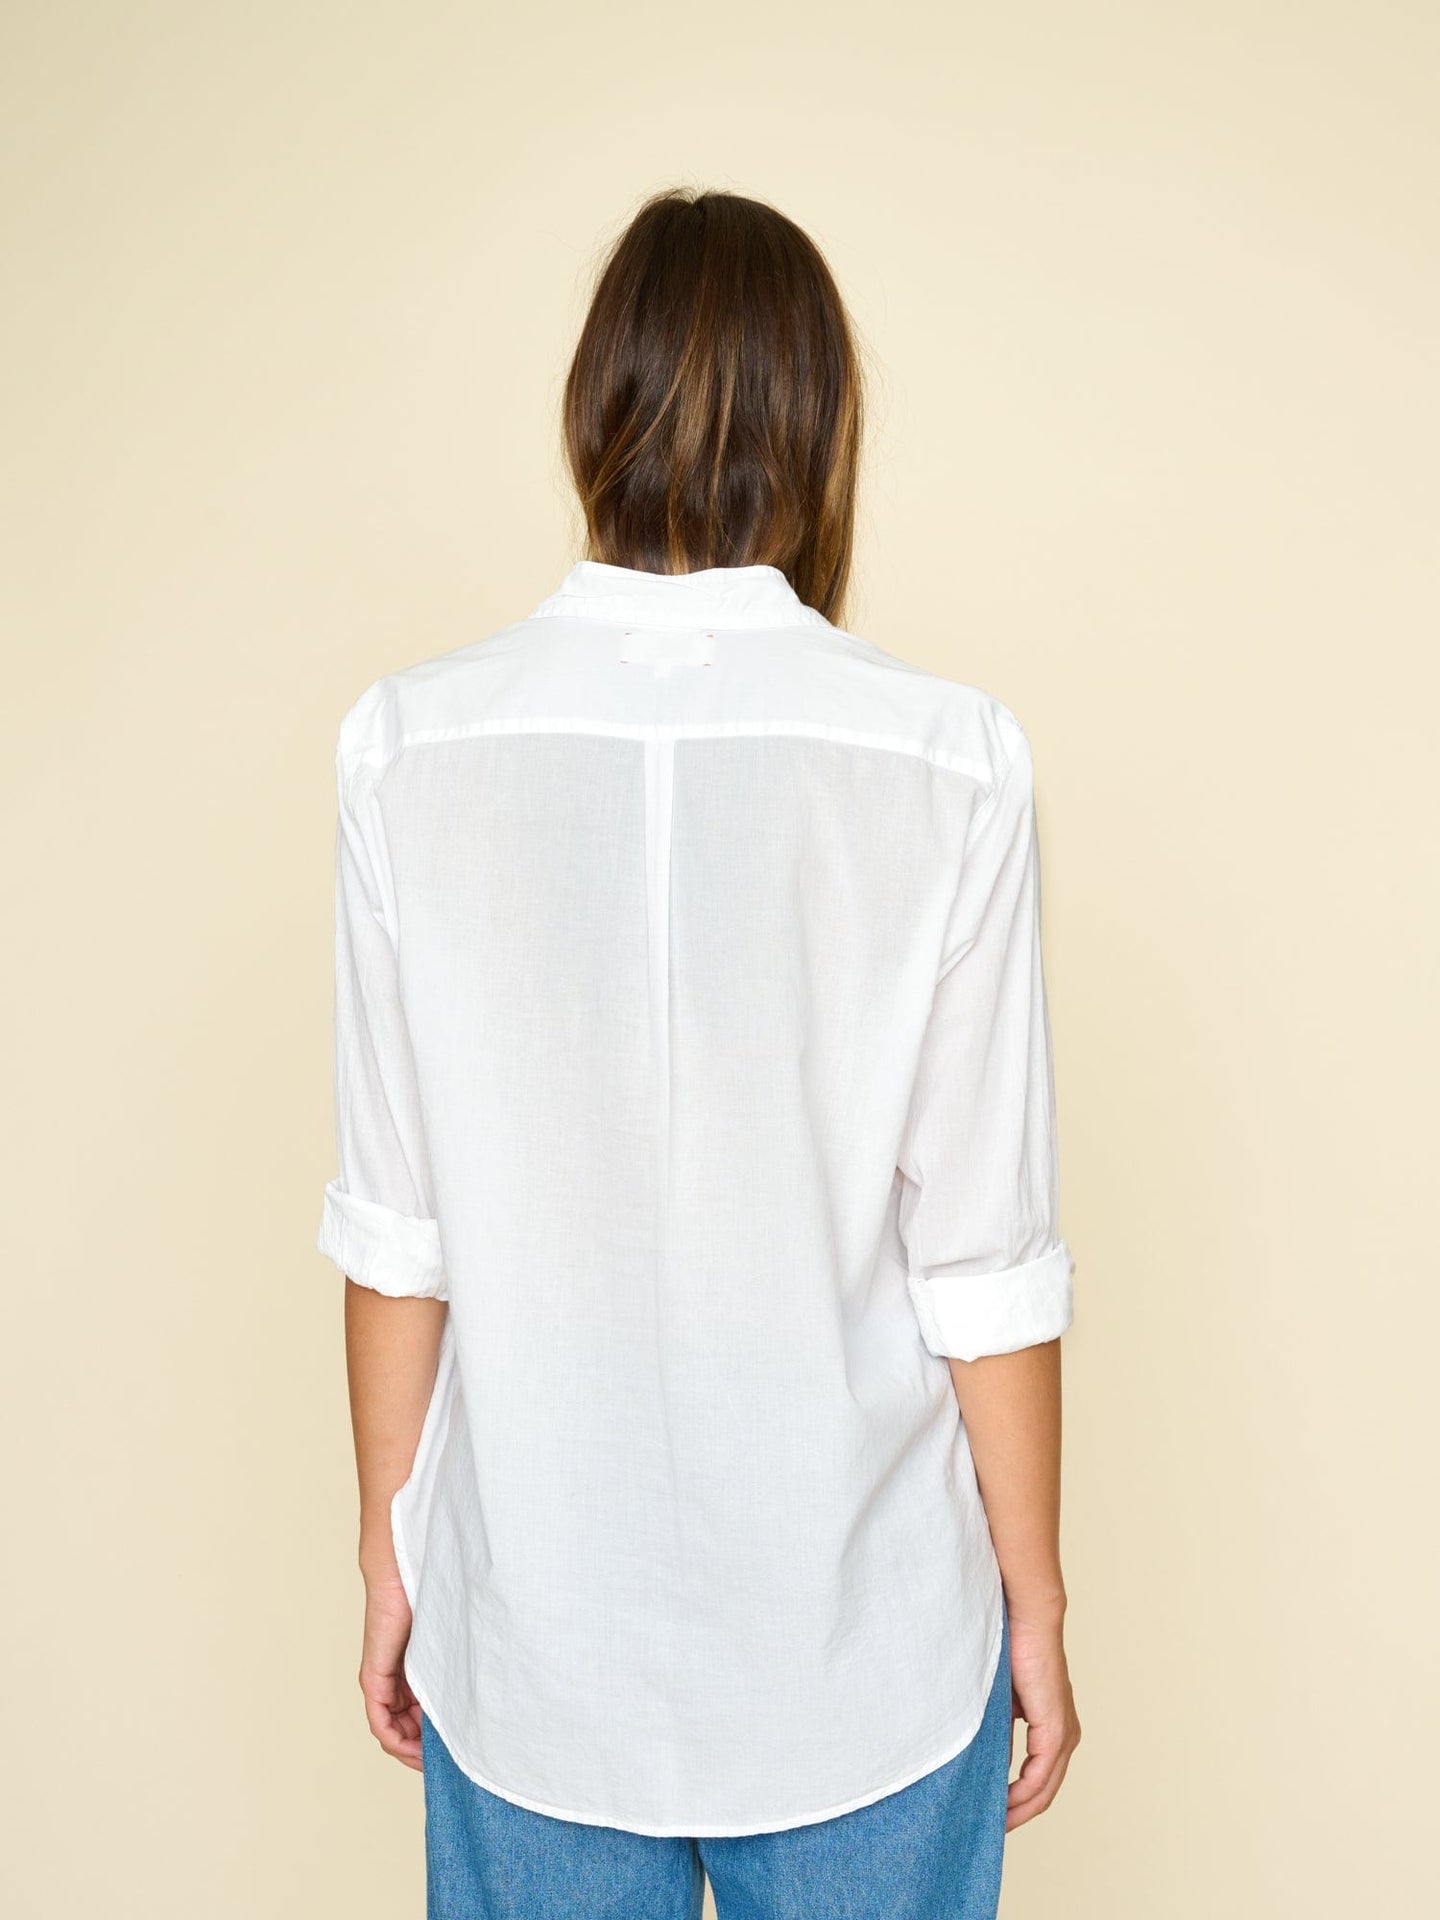 Xirena Shirt White Beau Shirt